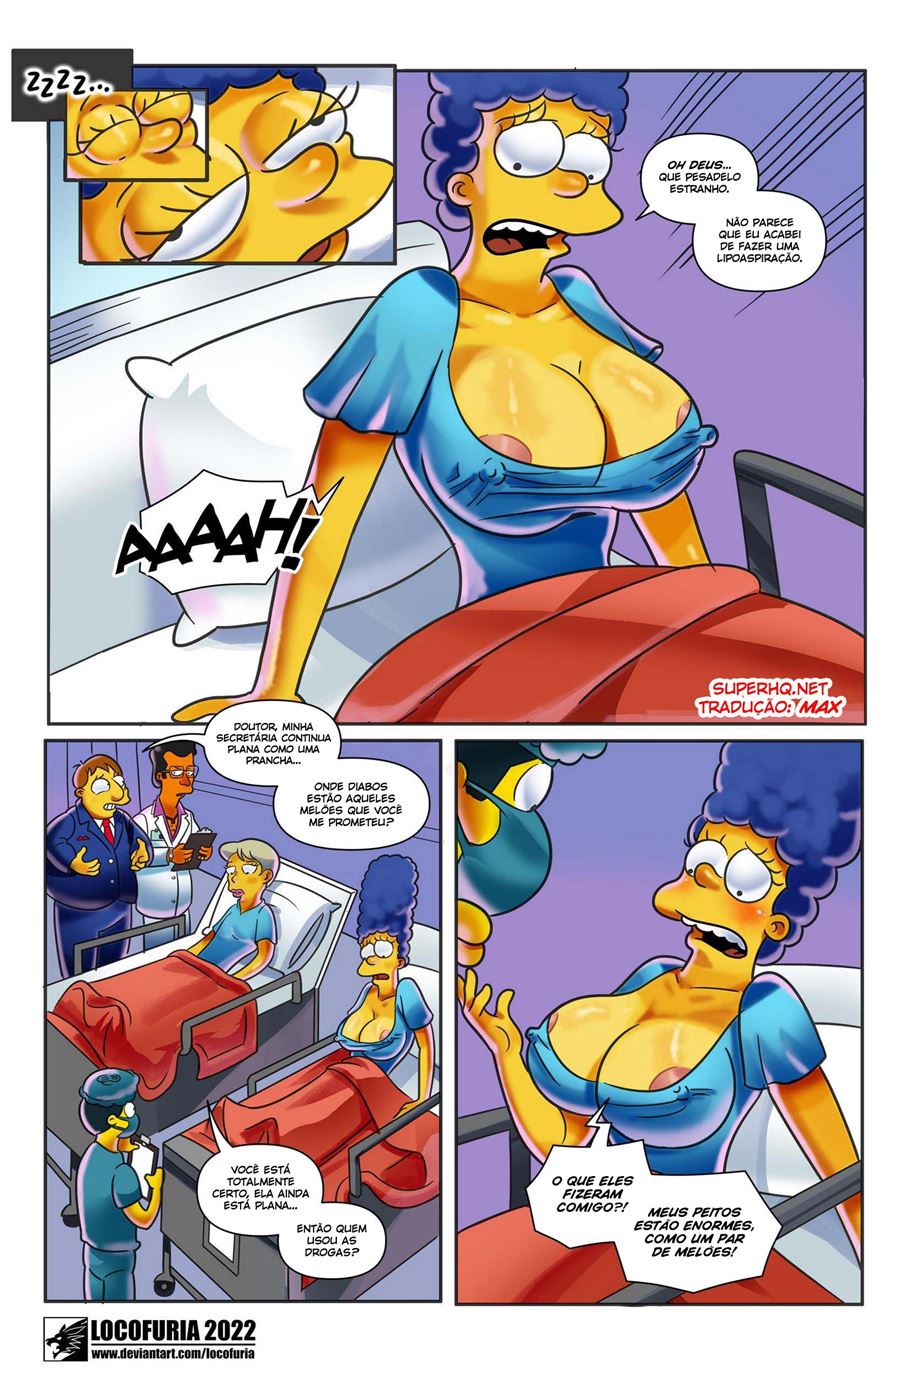 Os novos peitos de Marge Simpsons